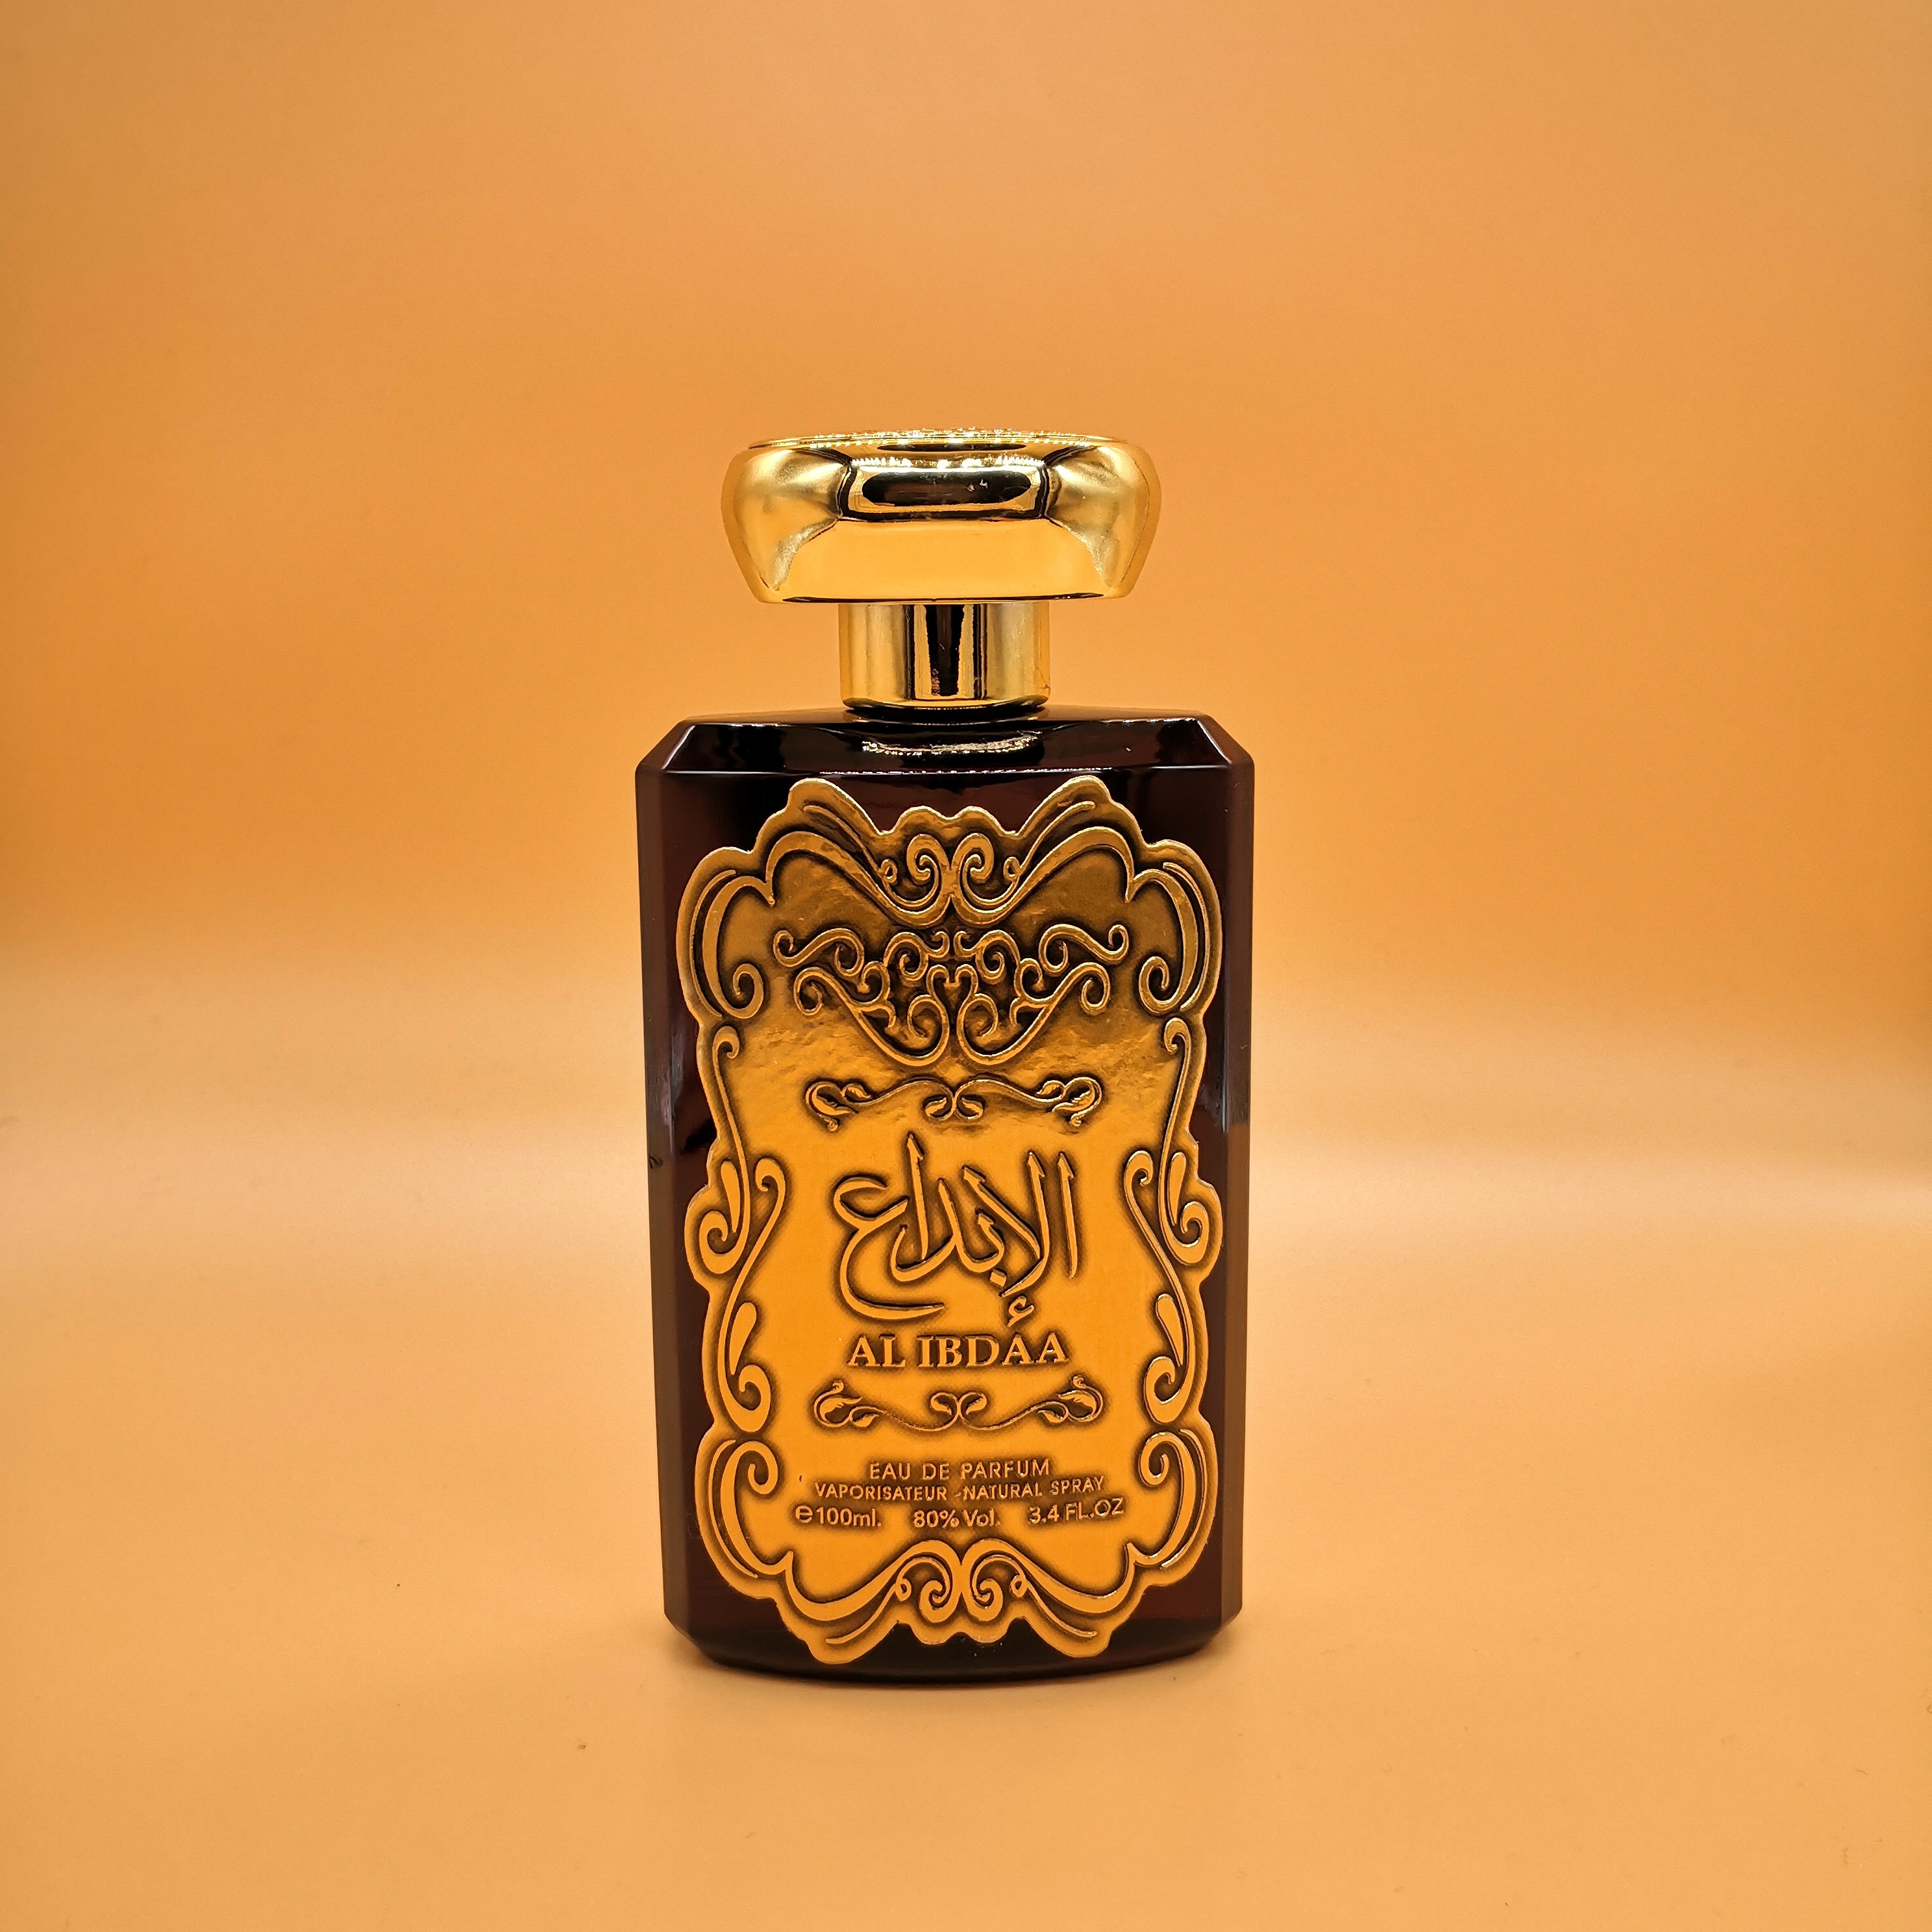 Al Ibdaa Gold - Eau De Parfum - 100ml by Ard Al Zaafaran for Women - image 2 of 3